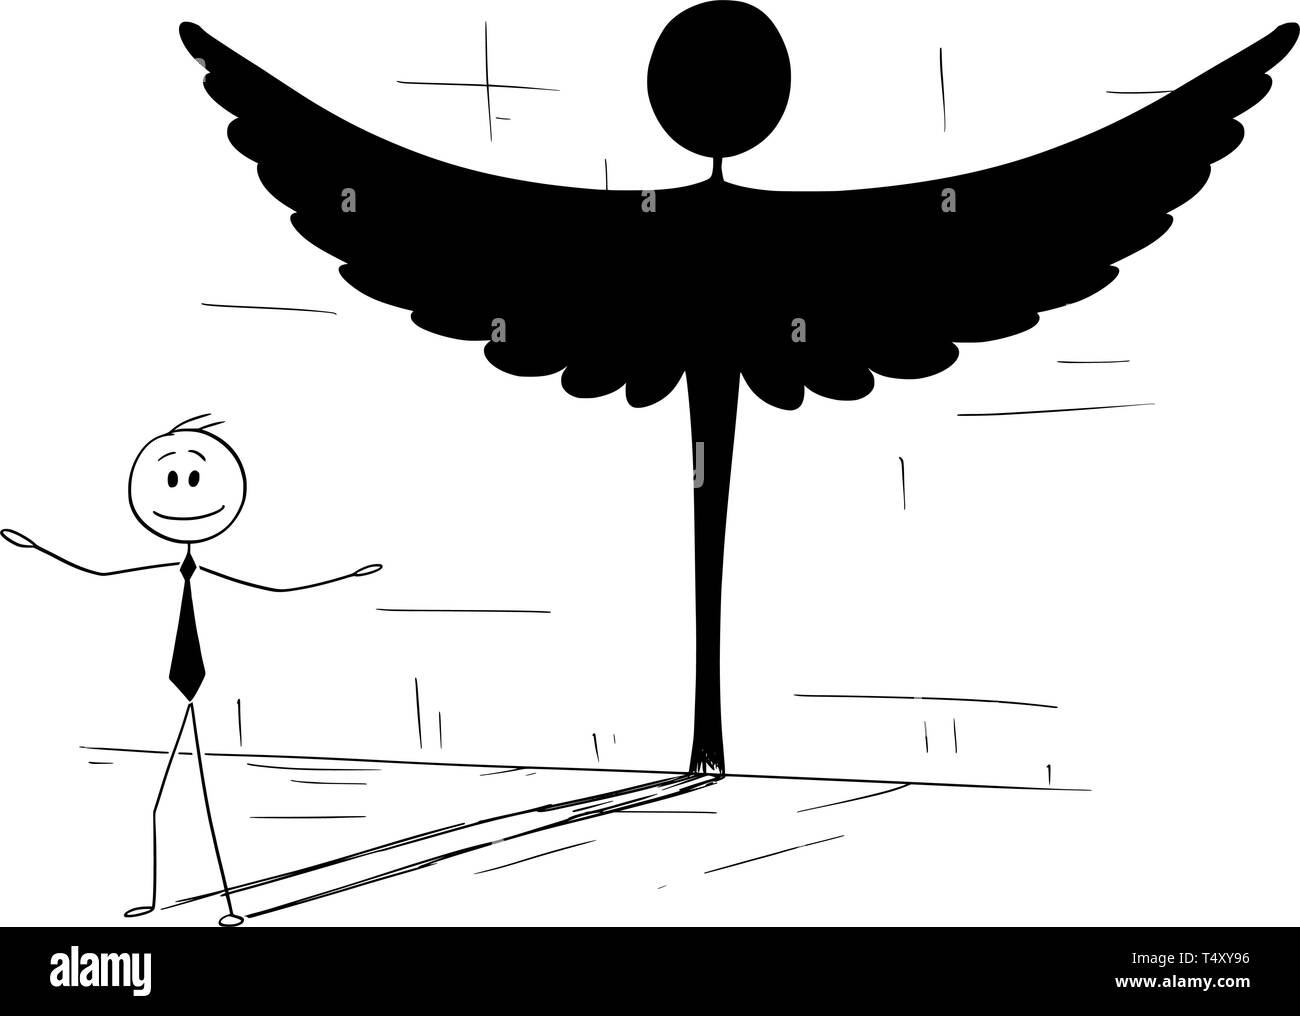 Cartoon Strichmännchen Zeichnung konzeptuelle Abbildung: guter Geschäftsmann oder Politiker werfen Schatten in Form der Engel. Stock Vektor